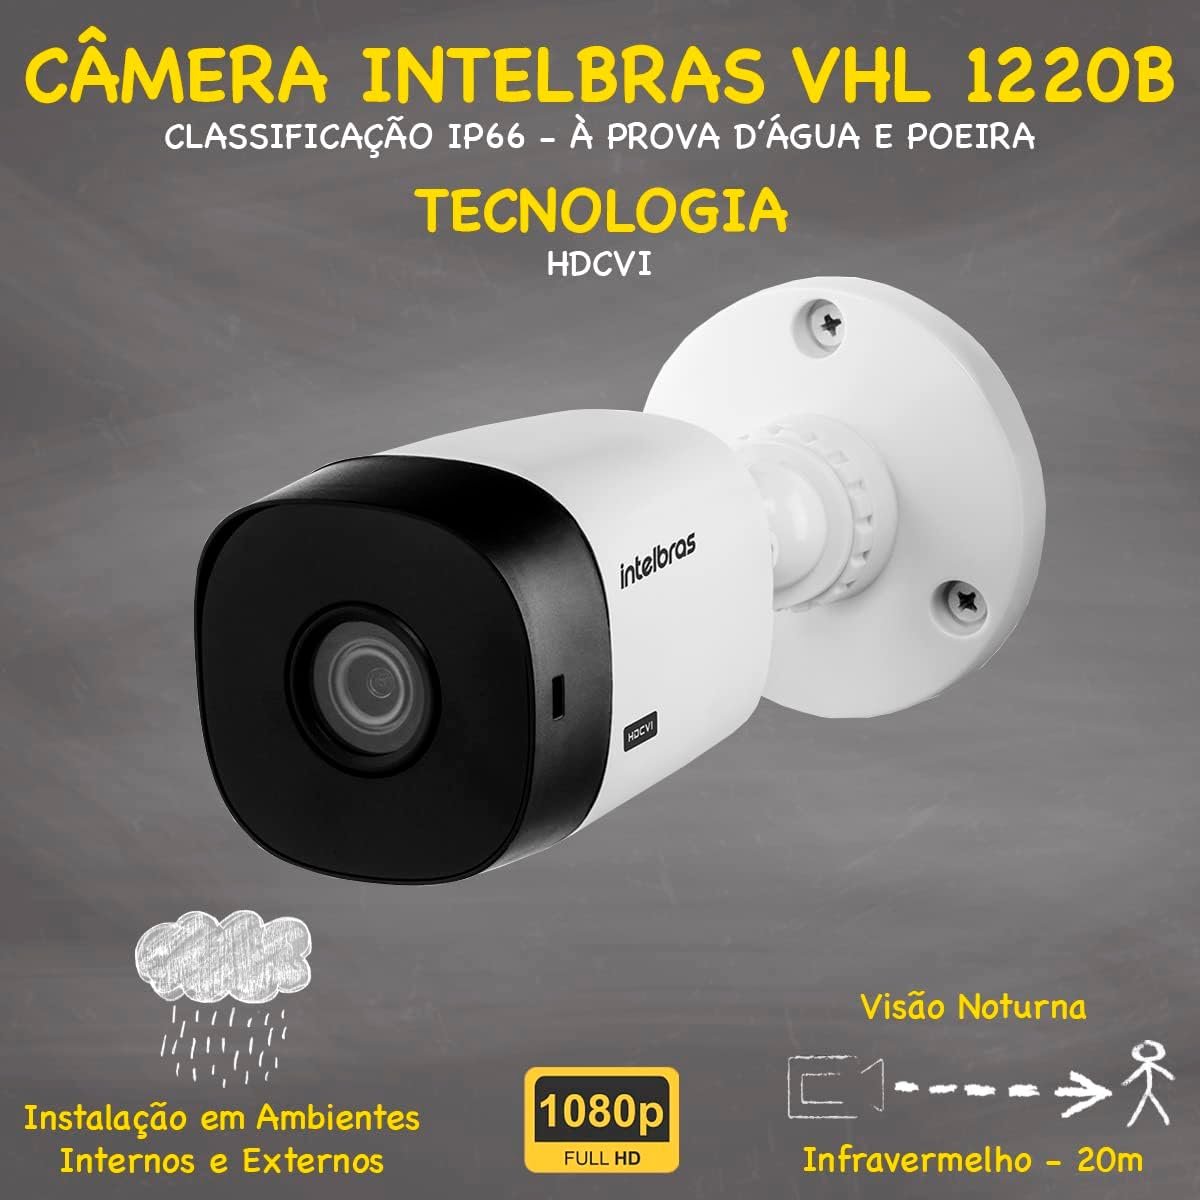 Kit Cftv 12 Cameras Full Hd Vhl 1220 Dvr Intelbras 1016c 2tb - 3